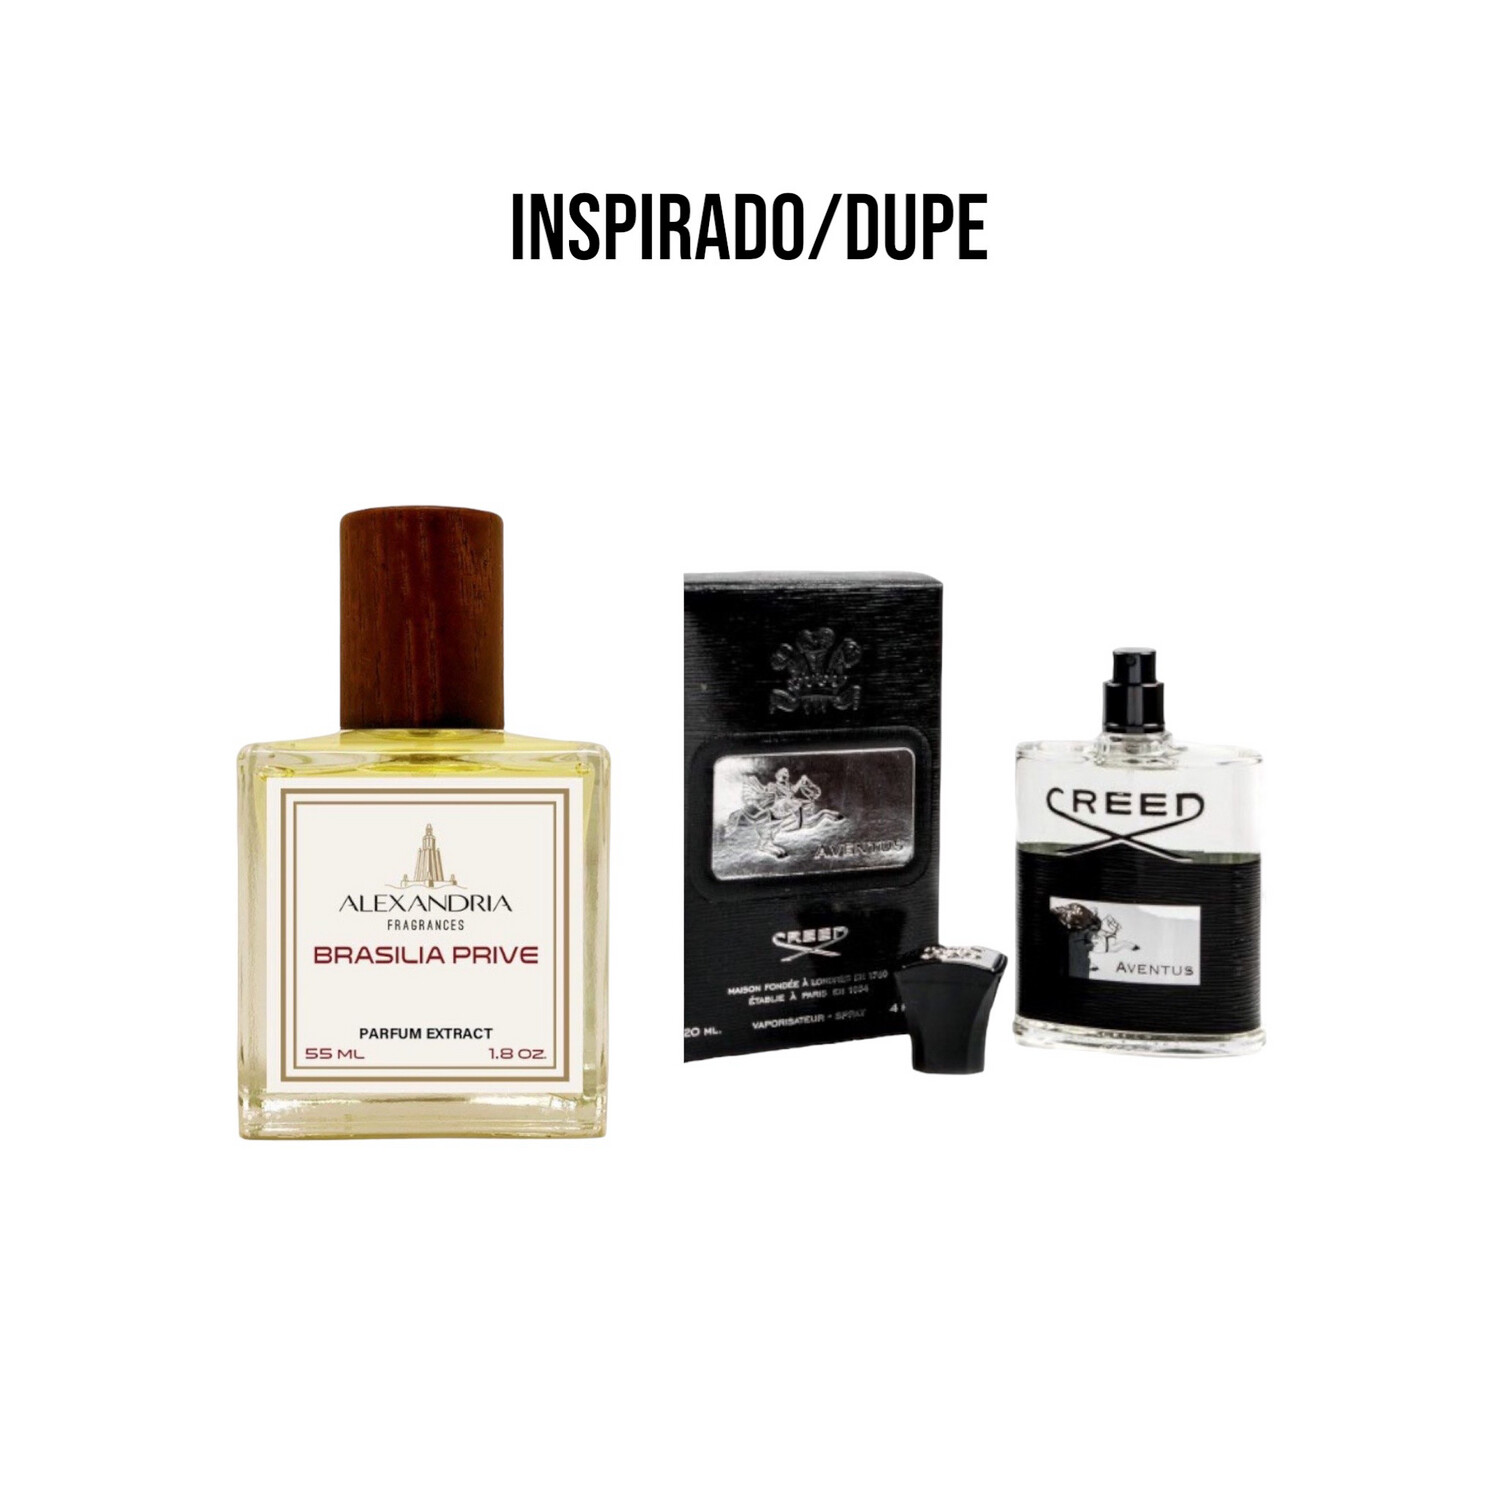 Brasilia Prive Inspirado en Creed Aventus batch 11z01 de 55ML extracto perfume Alexandria Fragrances